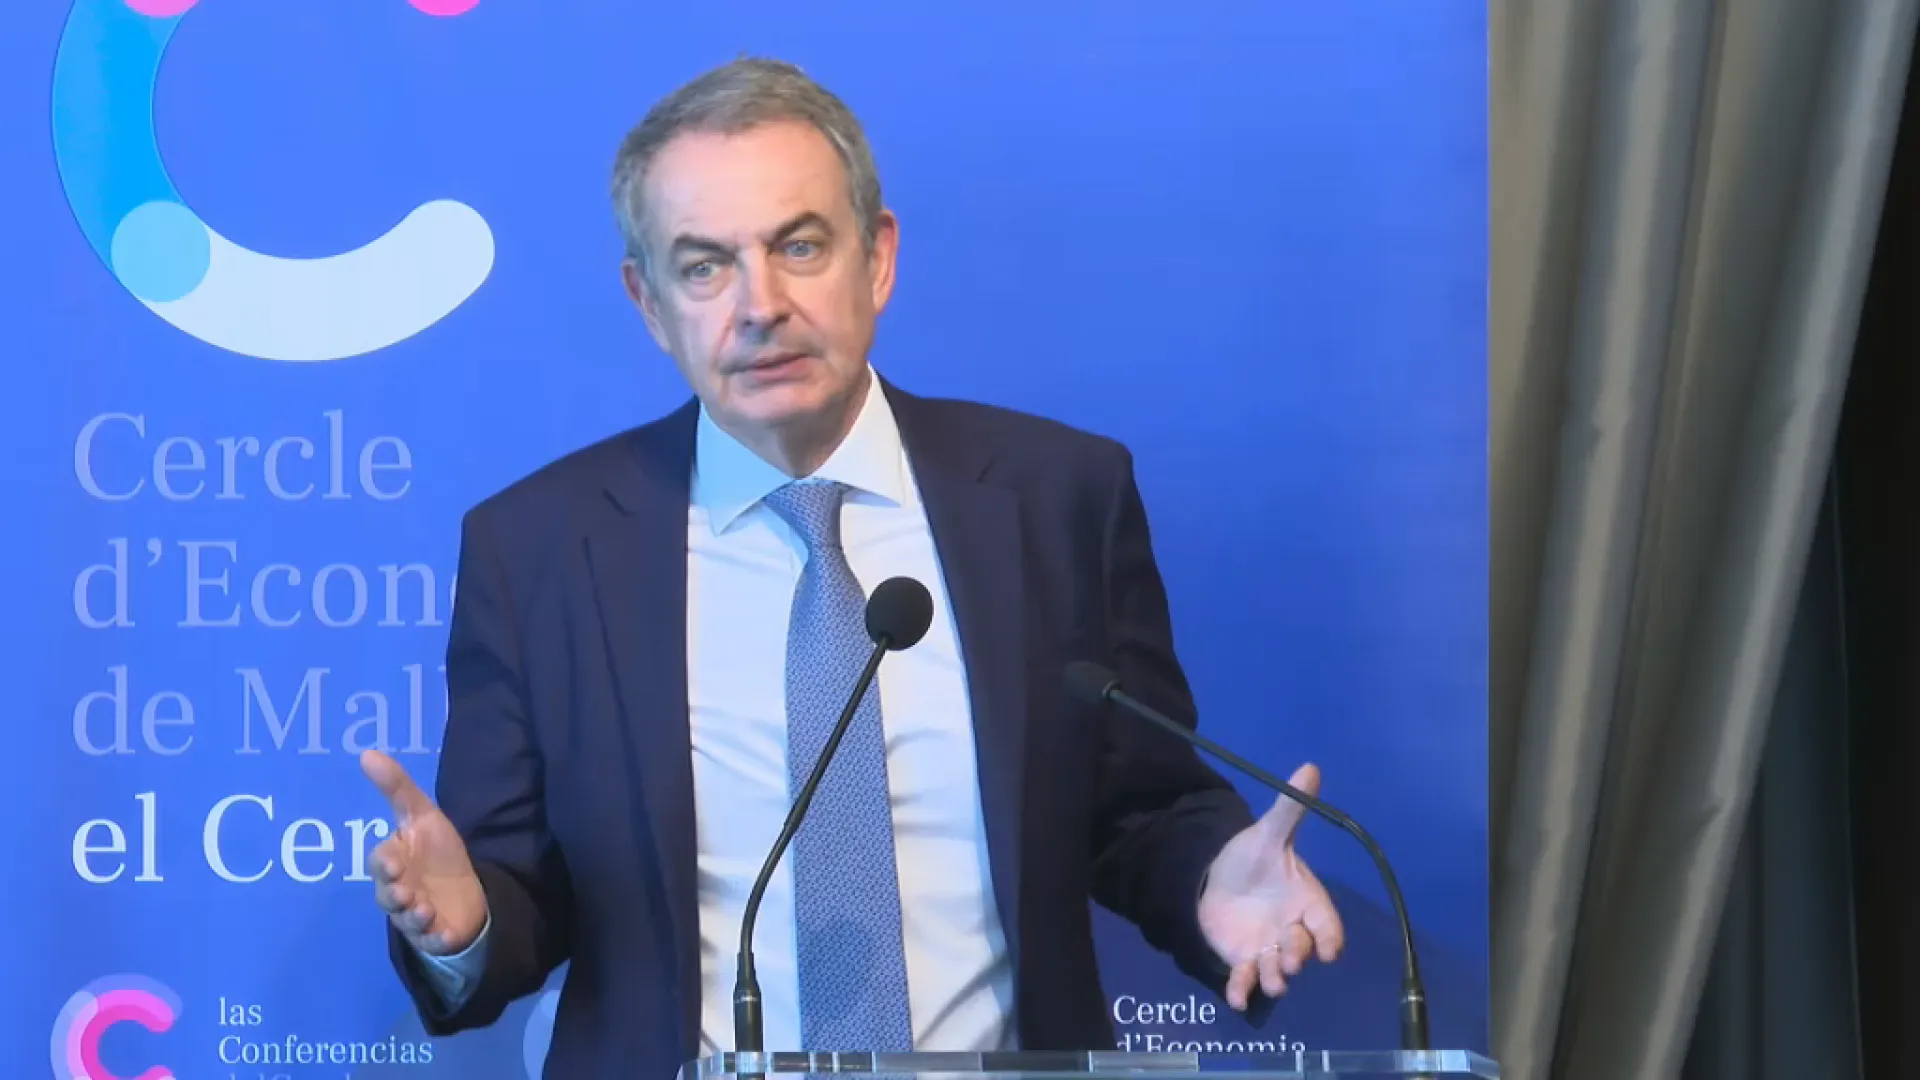 José Luis Rodríguez Zapatero adverteix que no és descartable una nova recessió econòmica